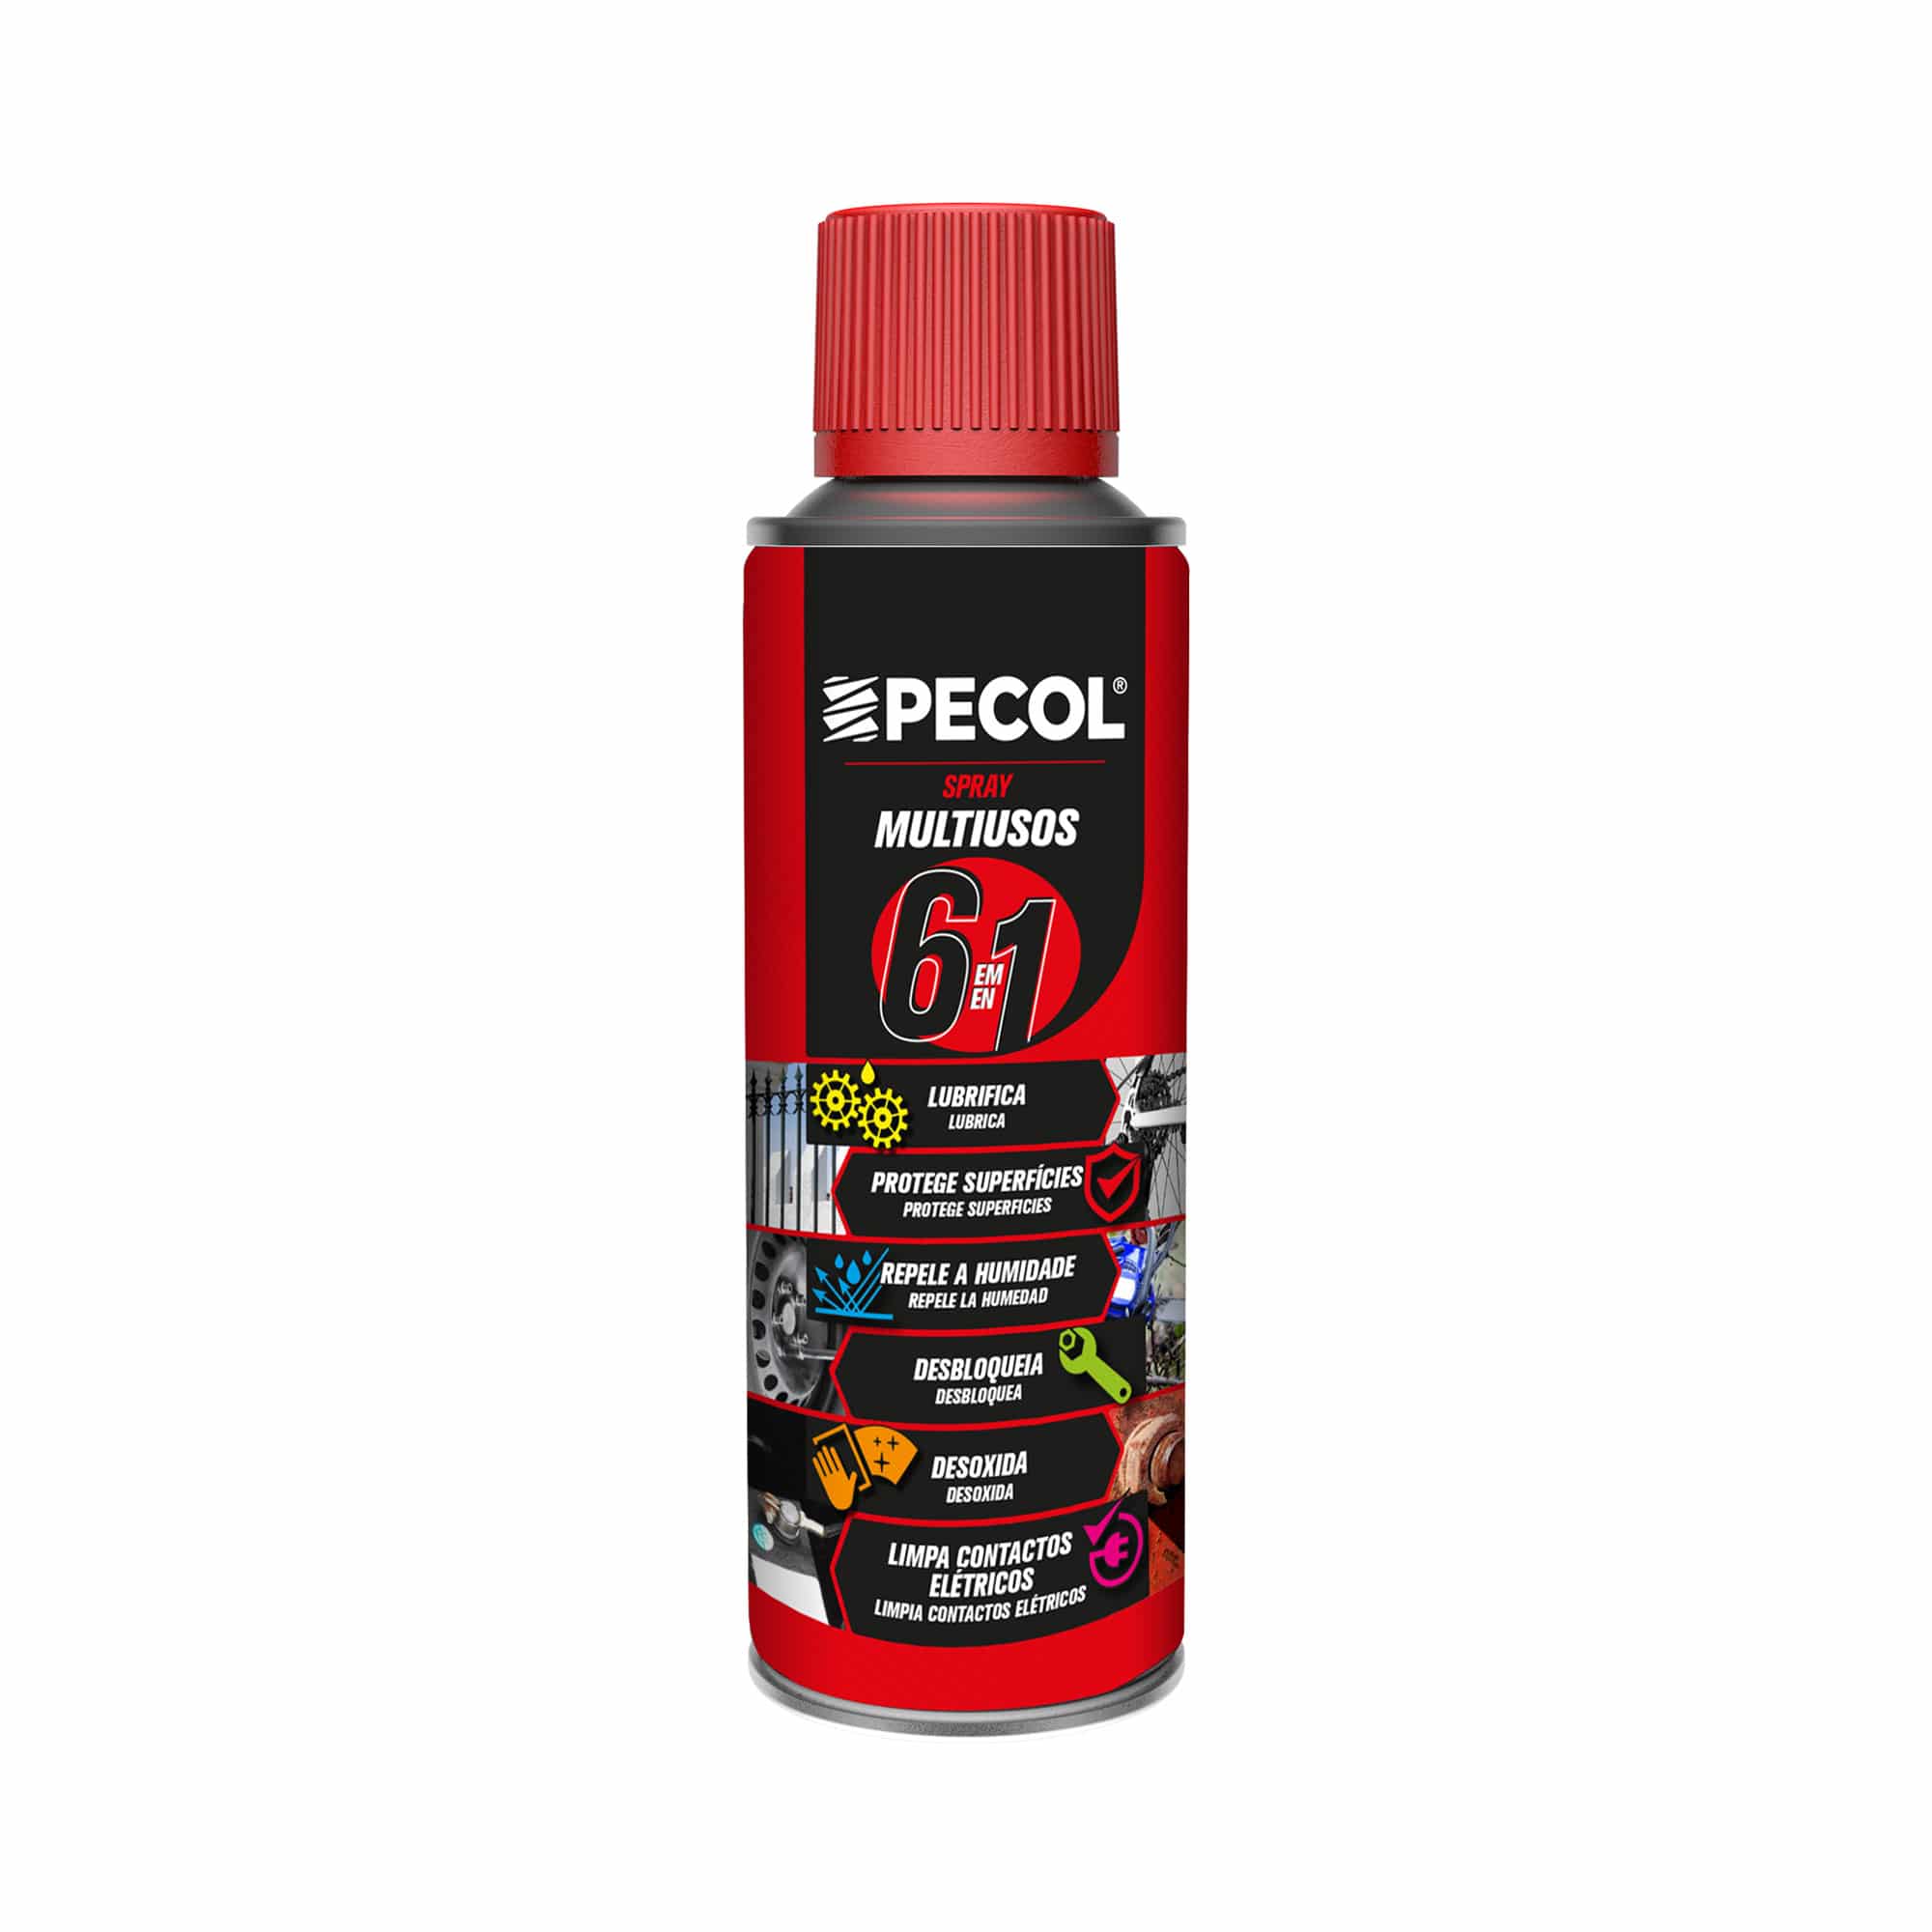 PECOL - Spray Multiusos 6 em 1 200Ml